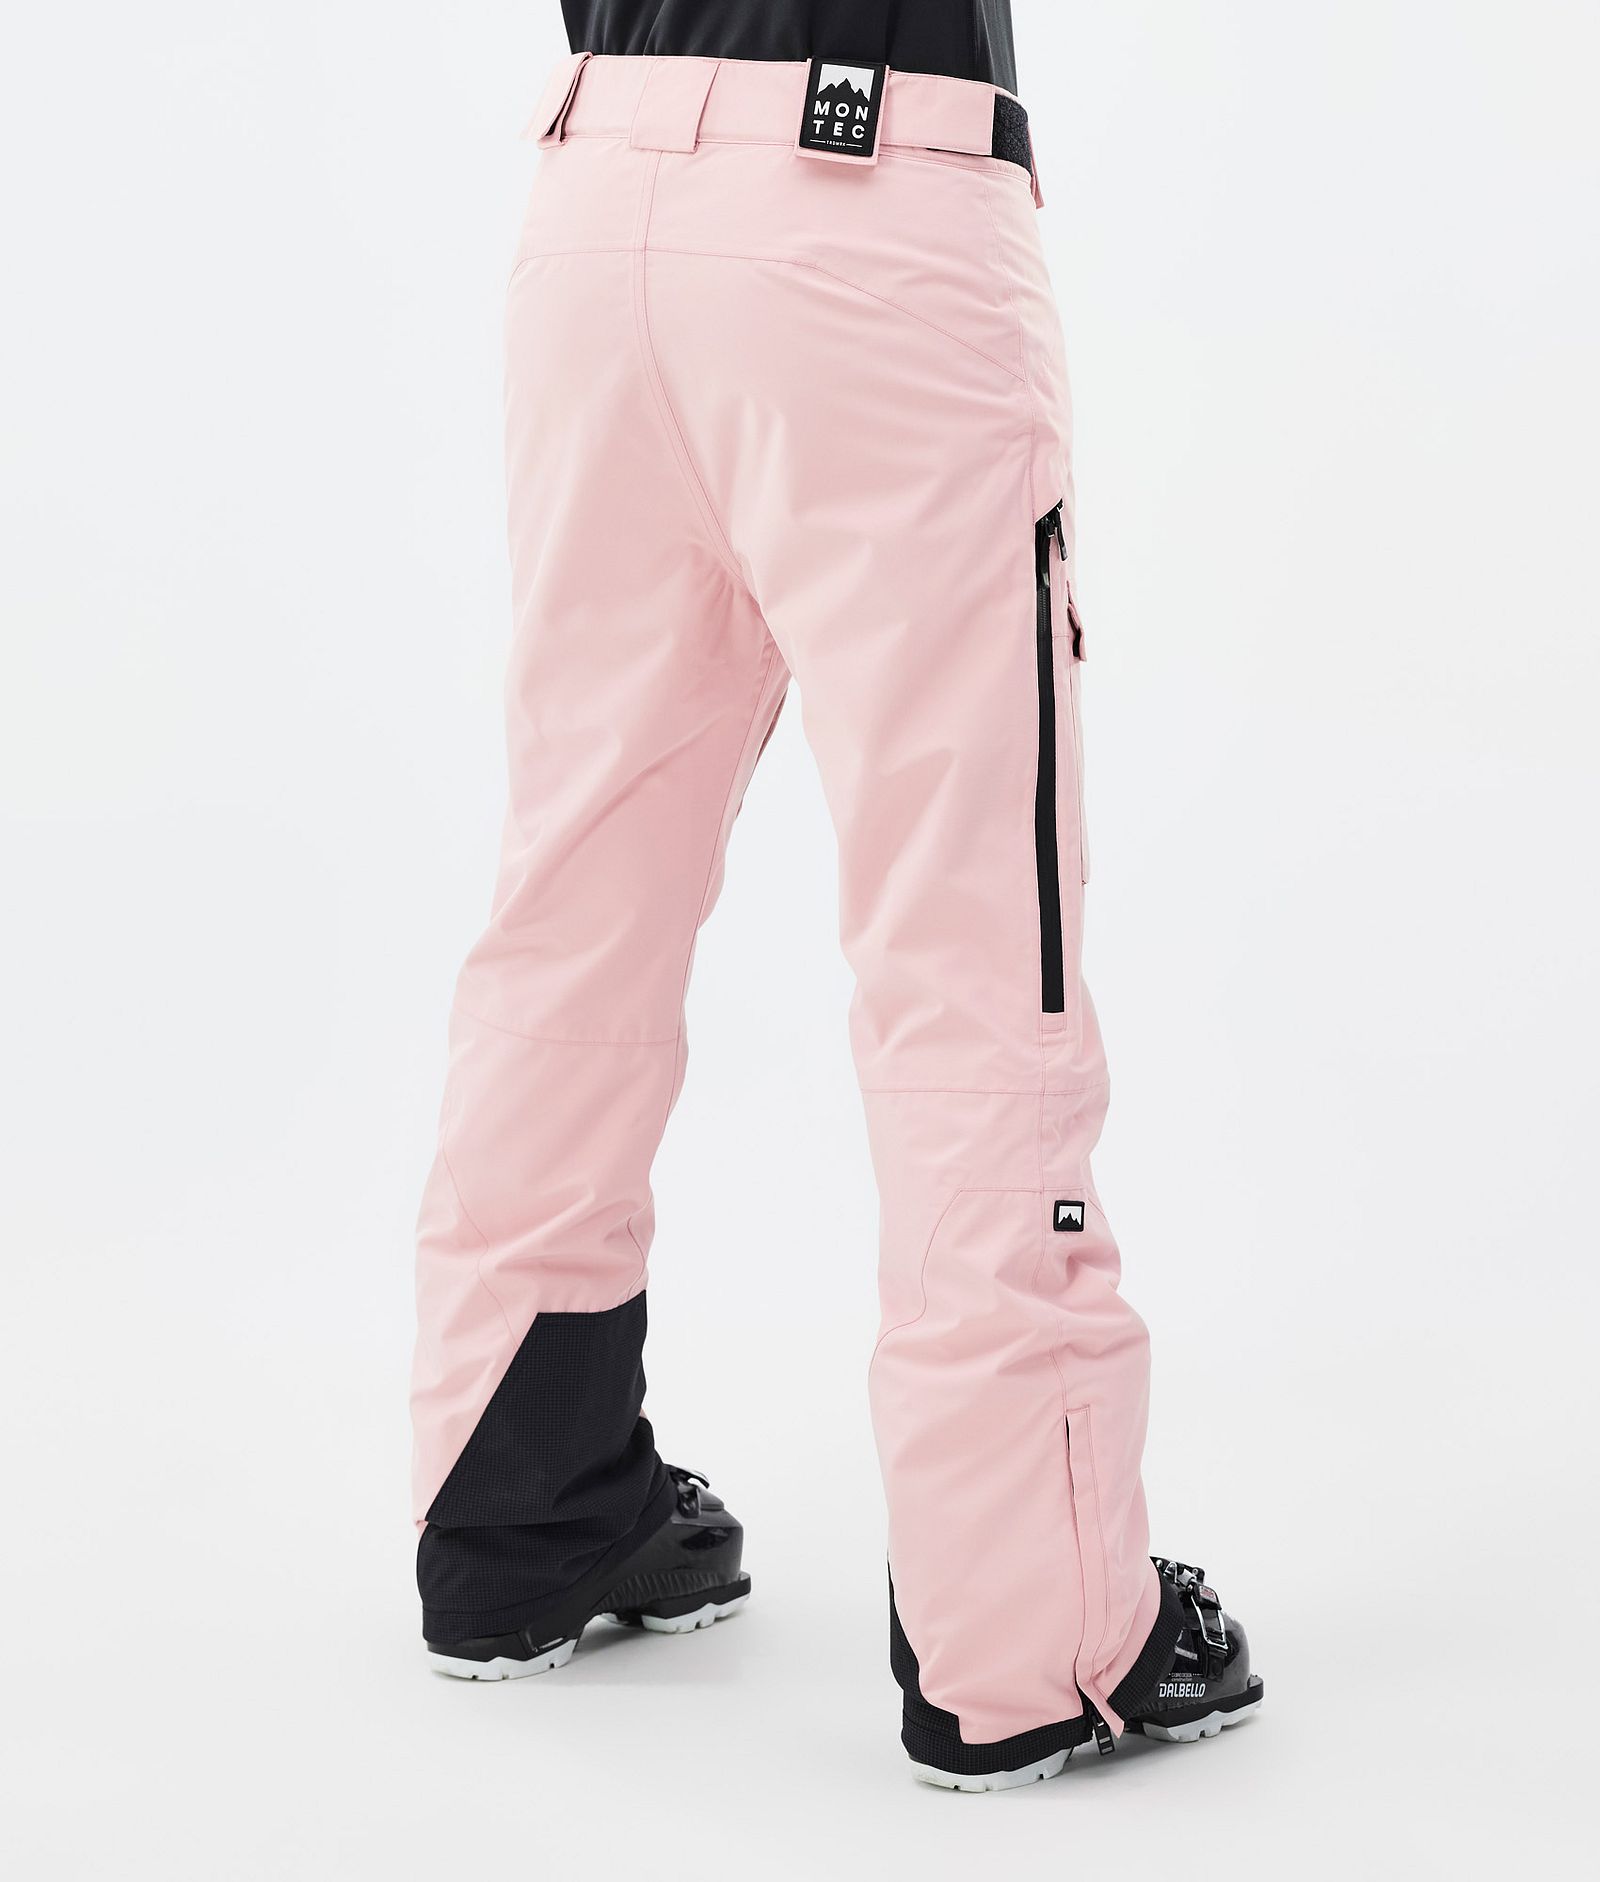 Montec Kirin W Spodnie Narciarskie Kobiety Soft Pink, Zdjęcie 4 z 6